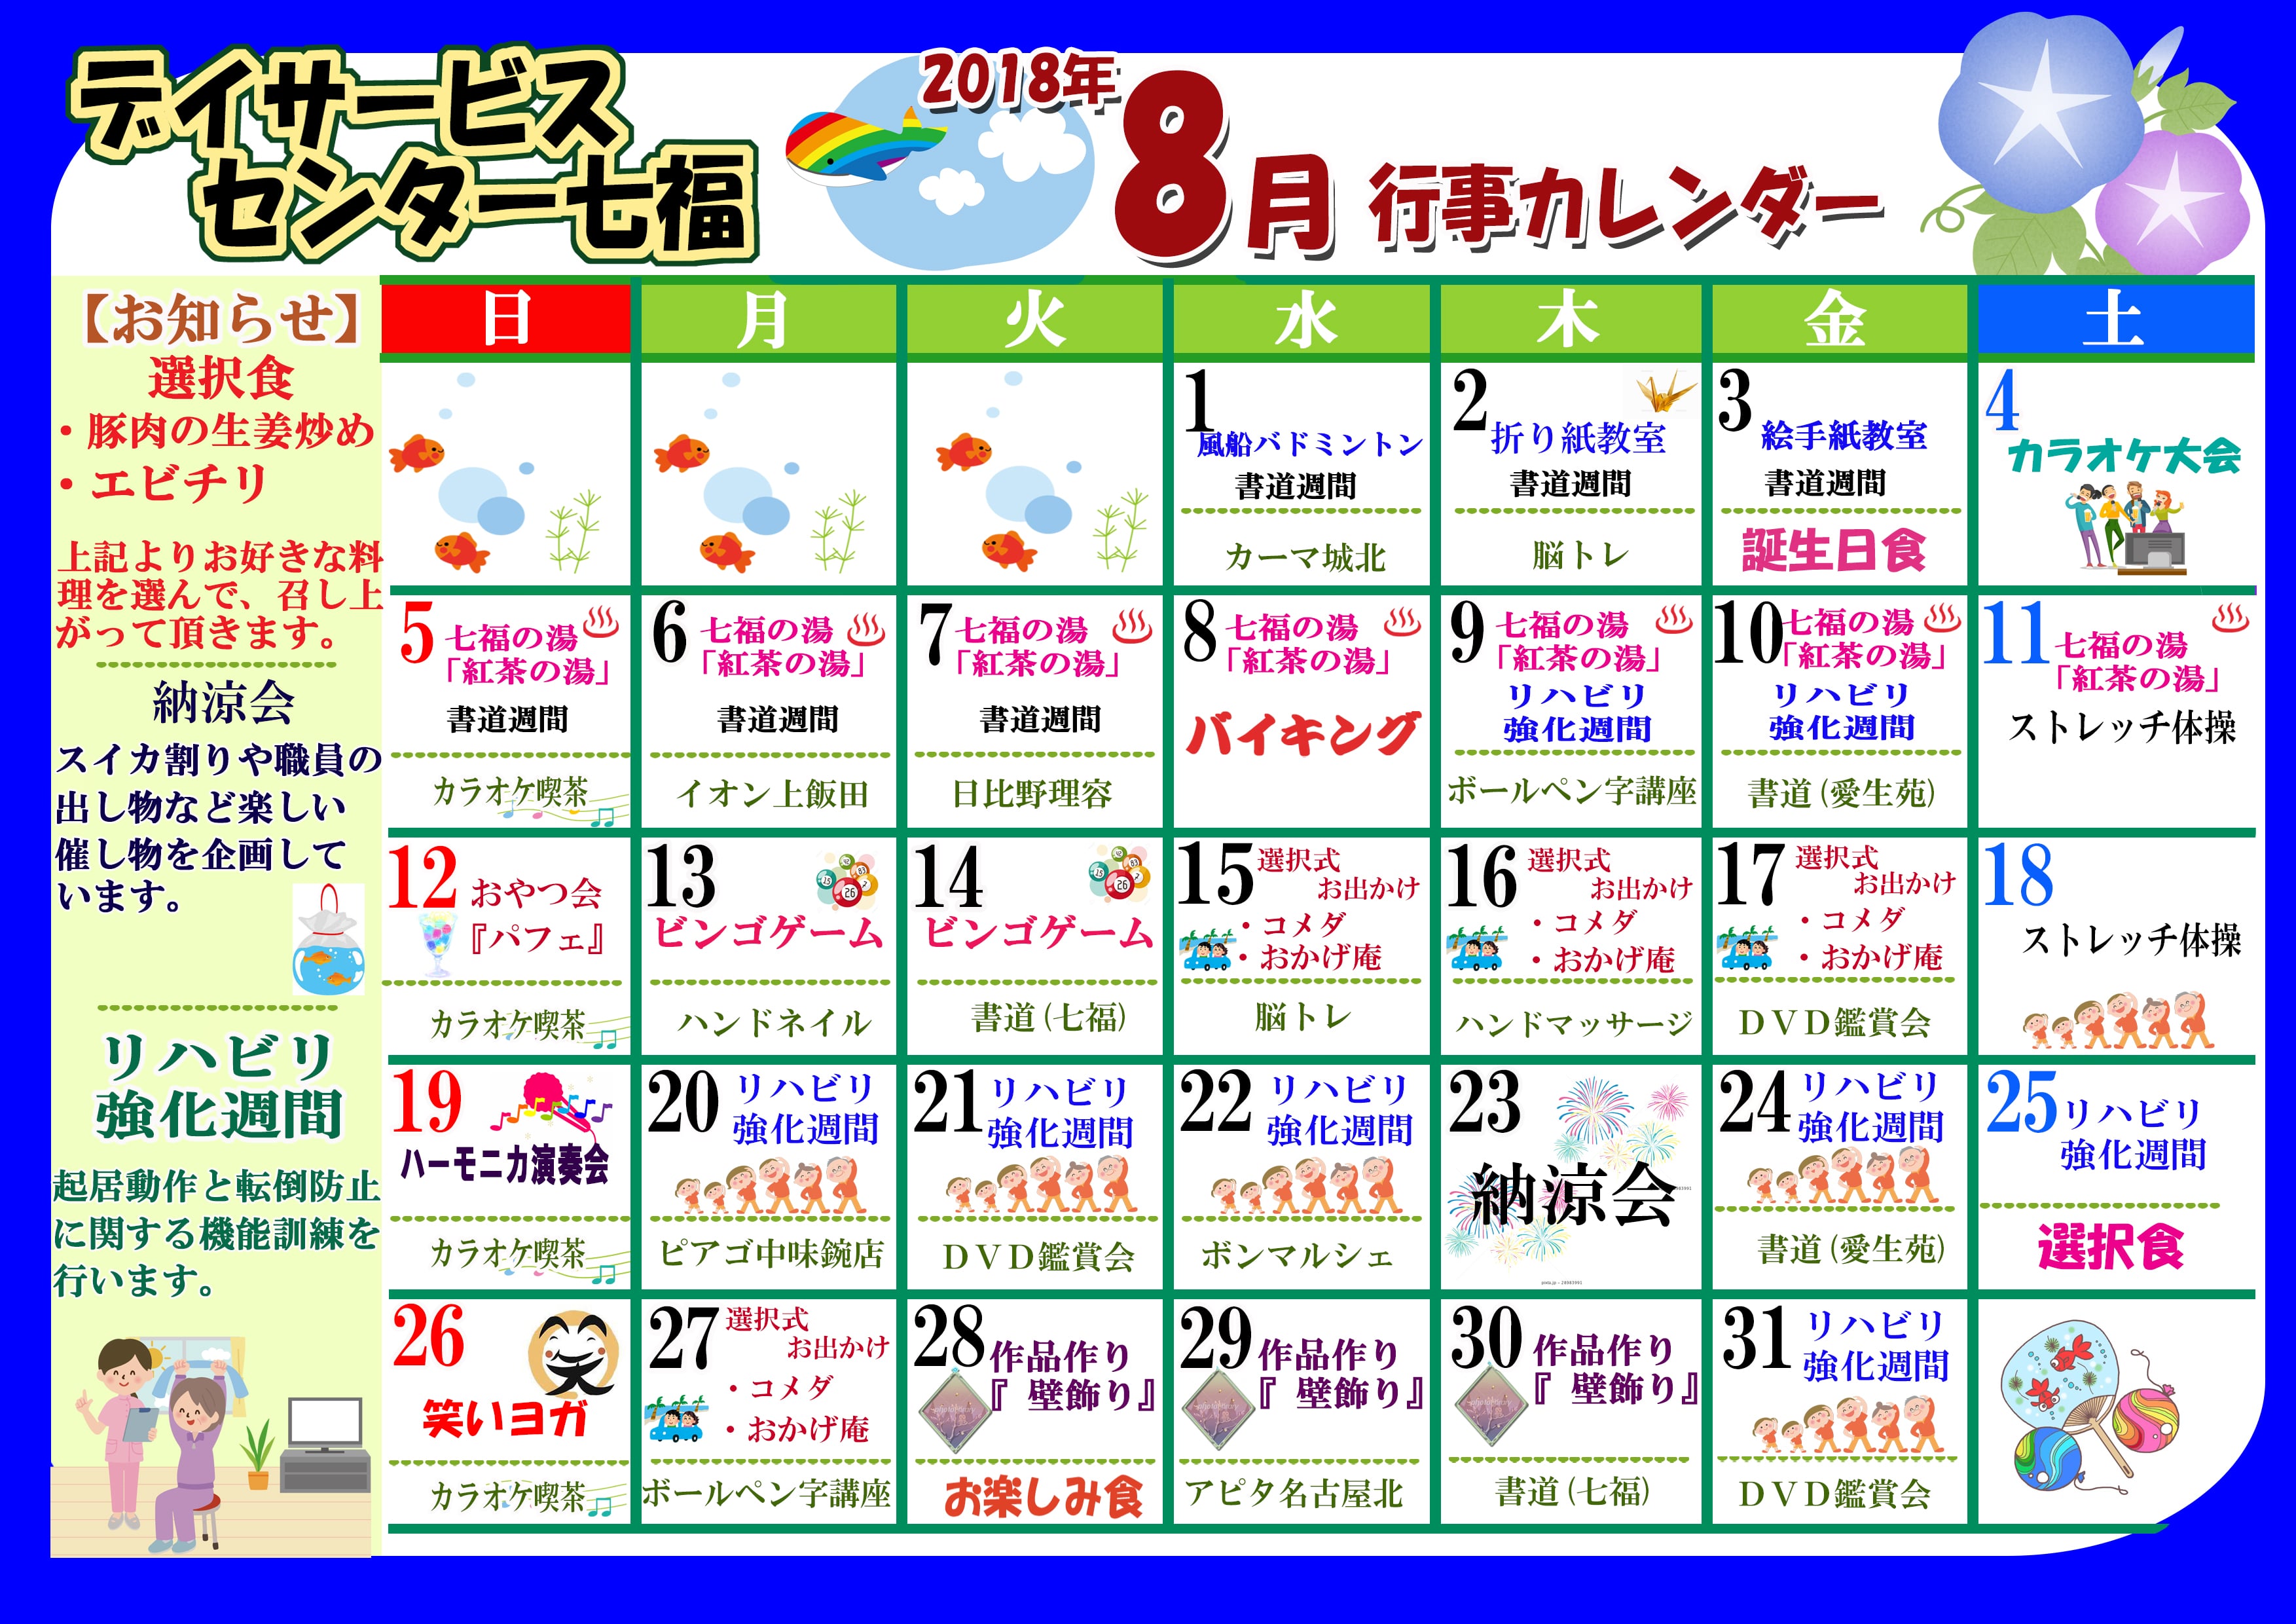 デイサービスセンター七福 8月のカレンダーが完成しました 名古屋で介護 福祉事業を展開する愛生福祉会